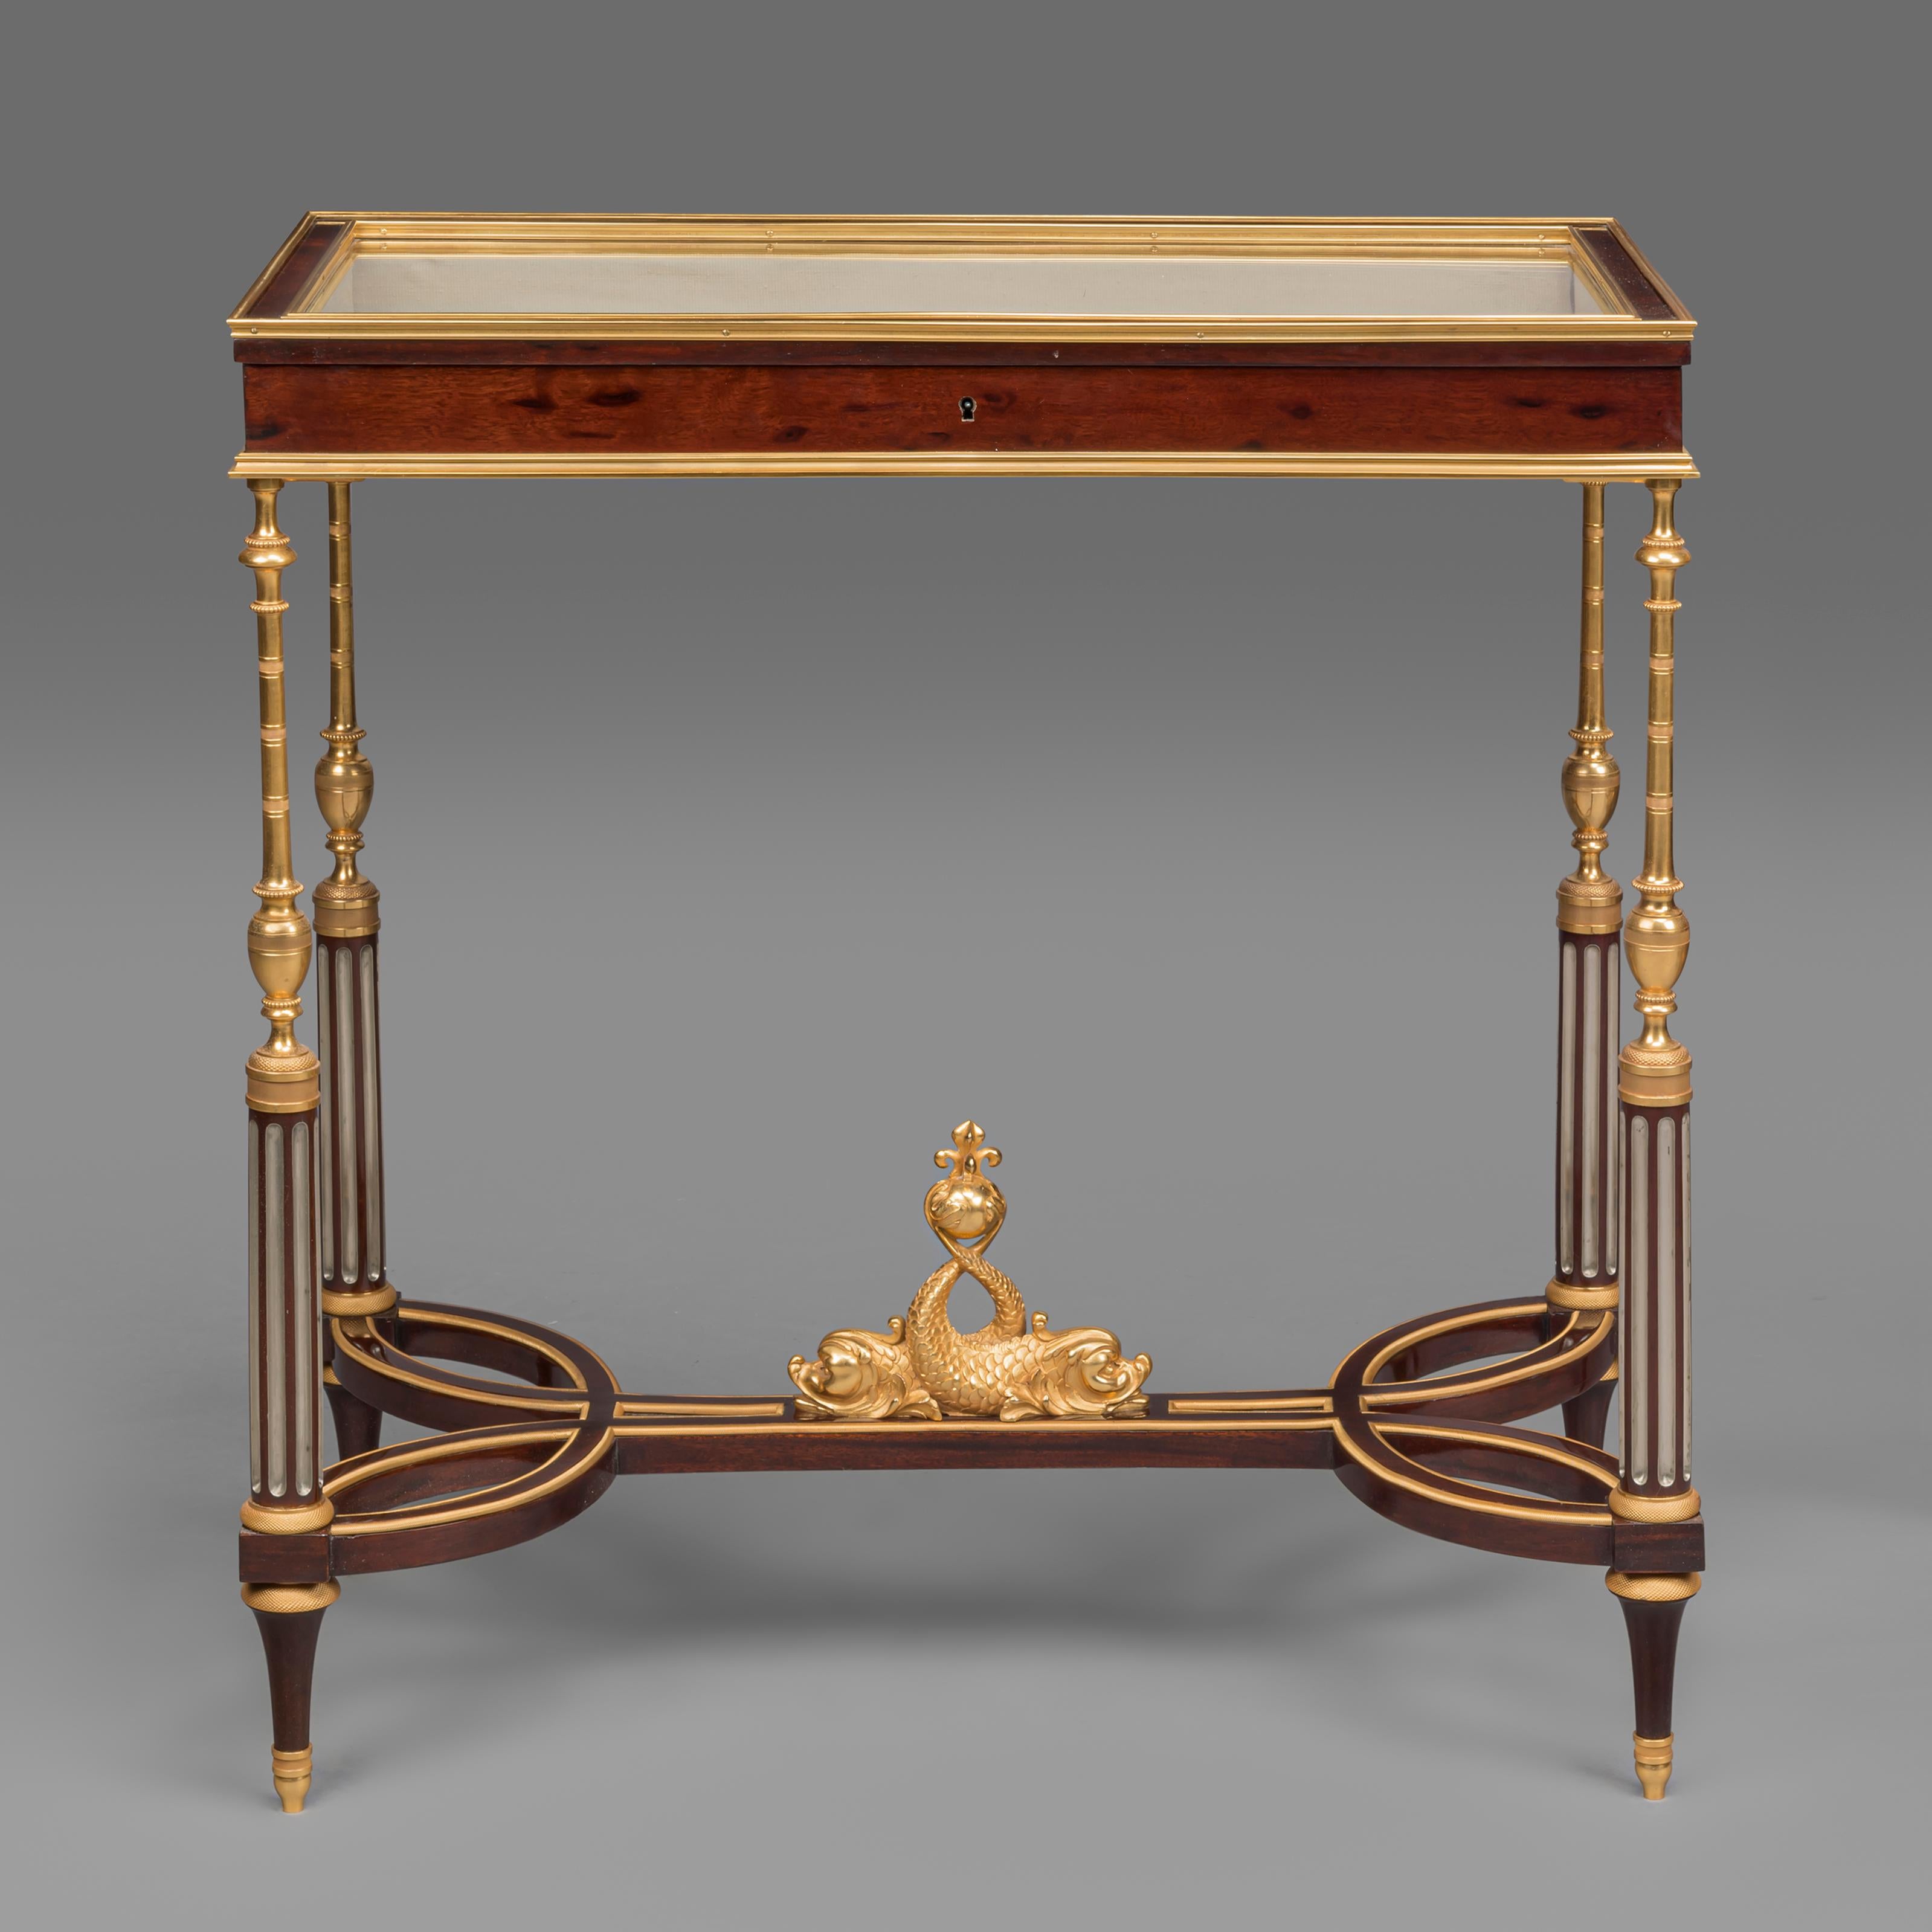 Rare paire de tables vitrines montées en bronze doré de style Louis XVI, à la manière de Weisweiler, par Georges-François Alix.

Cette rare paire de tables vitrines en acajou possède chacune un plateau rectangulaire en verre s'ouvrant sur des